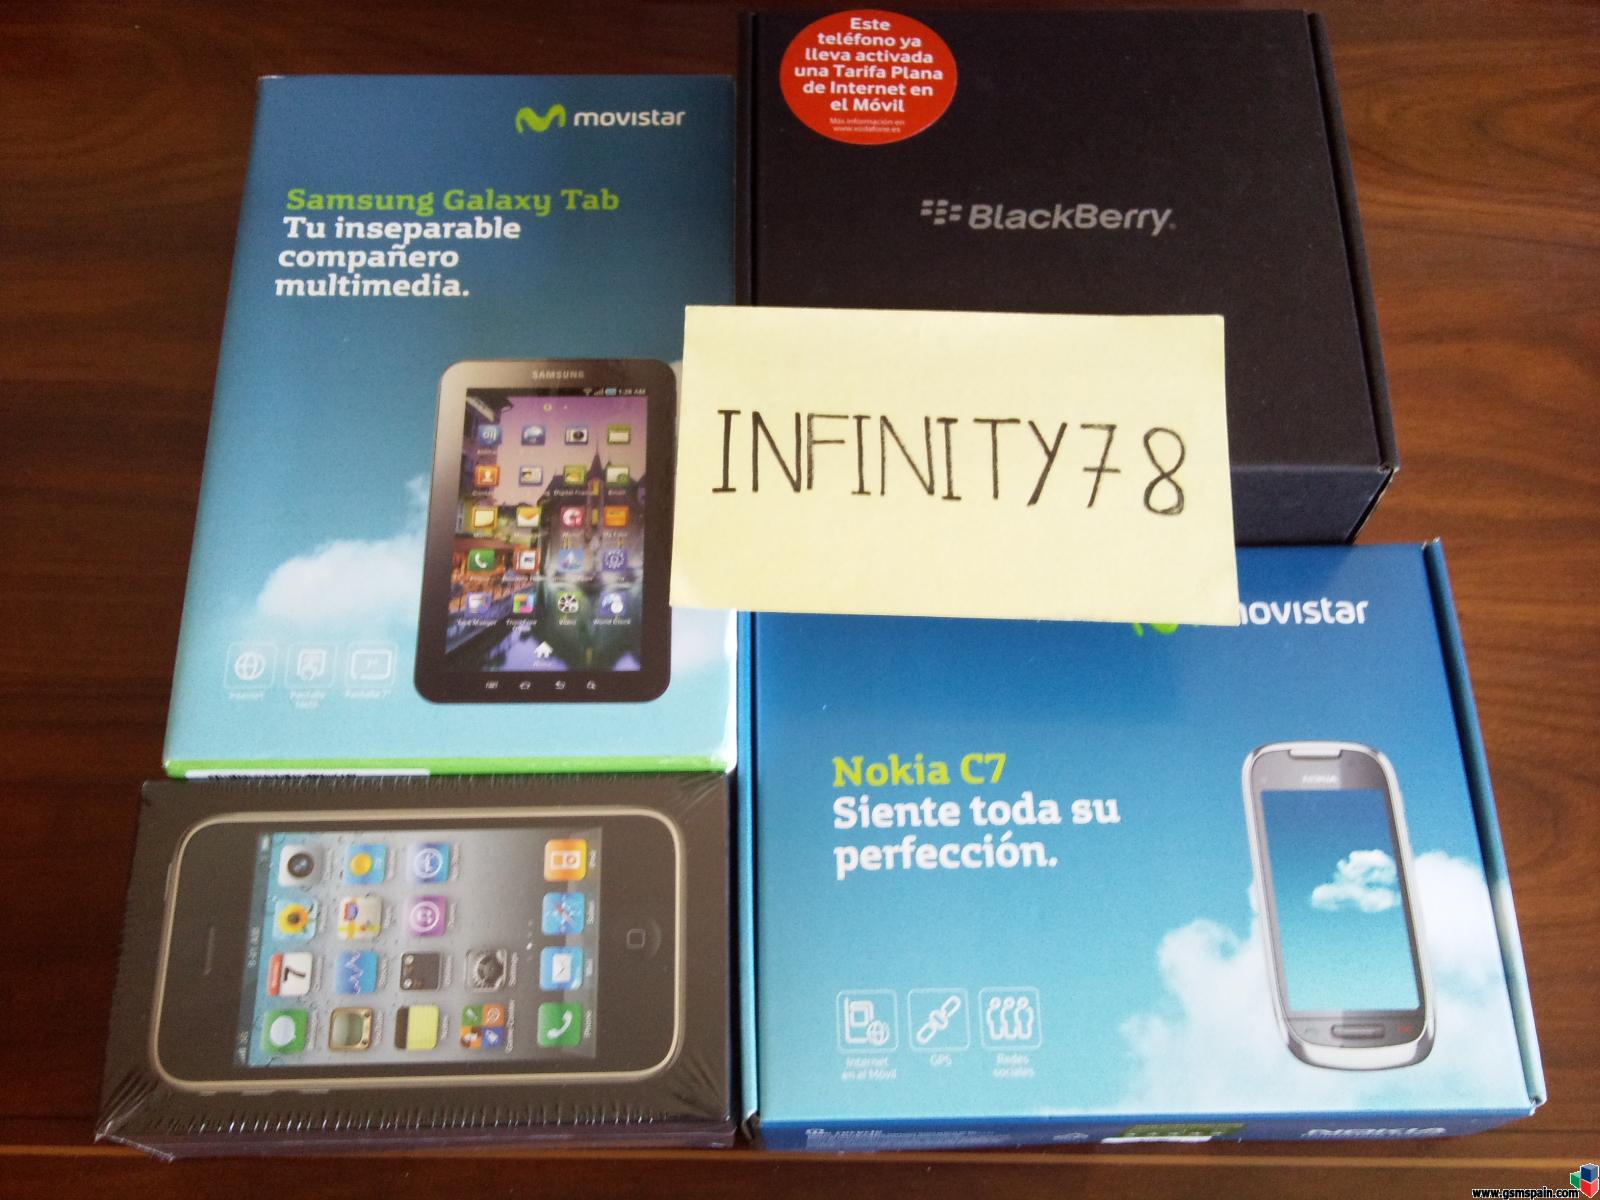 [VENDO] IPhone 3gs, Blackberry 9780, Samsung Galaxy Tab, Nokia C7 (PRECINTADOS)